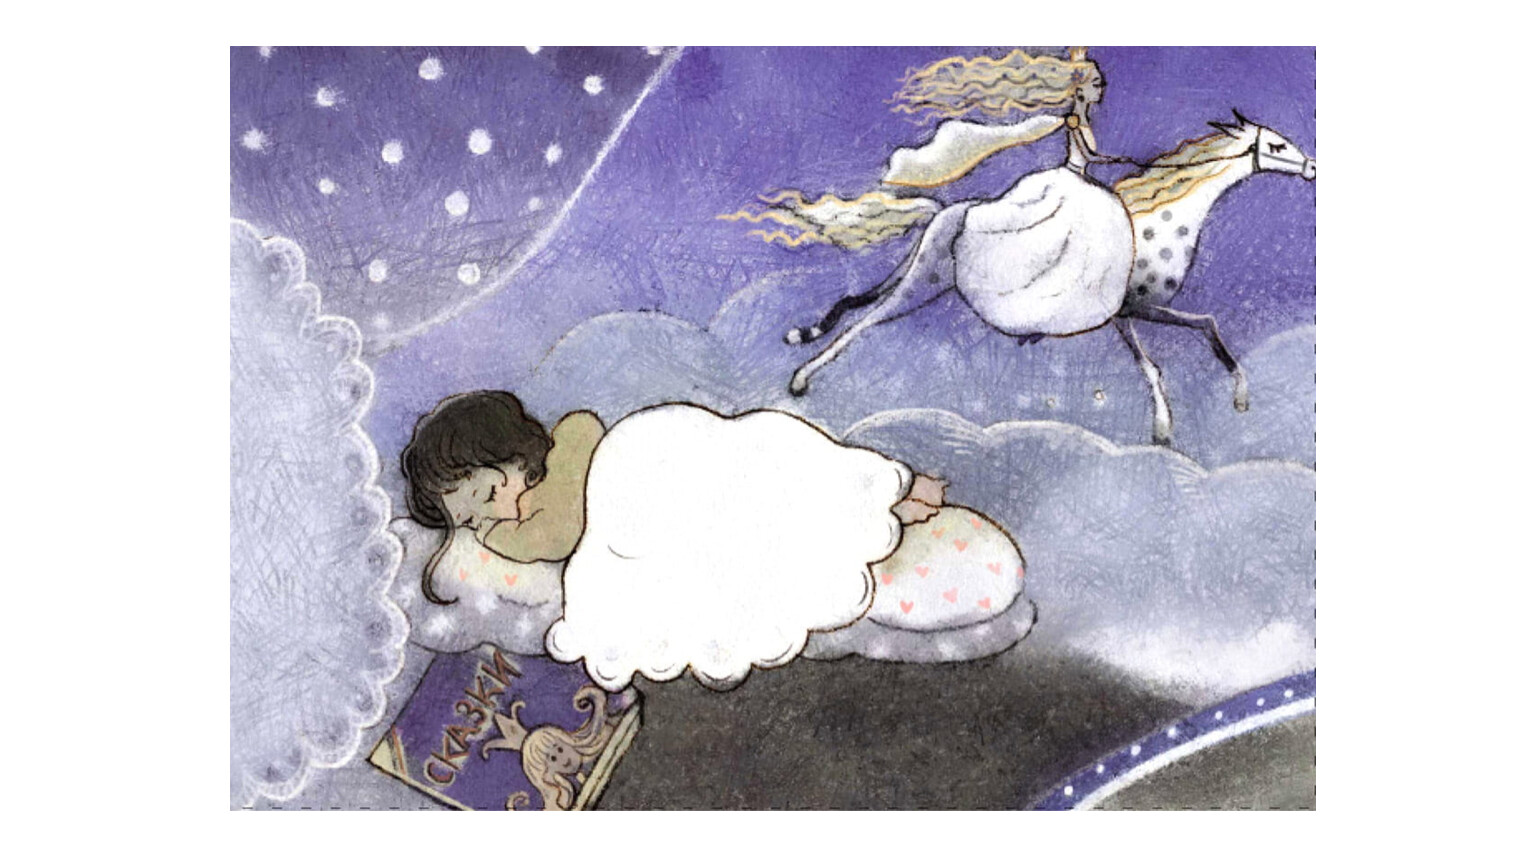 Истории на ночь для сна. Сказочный сон. Иллюстрация к стихотворению сны. Детские сны. Рисунки на тему сон.